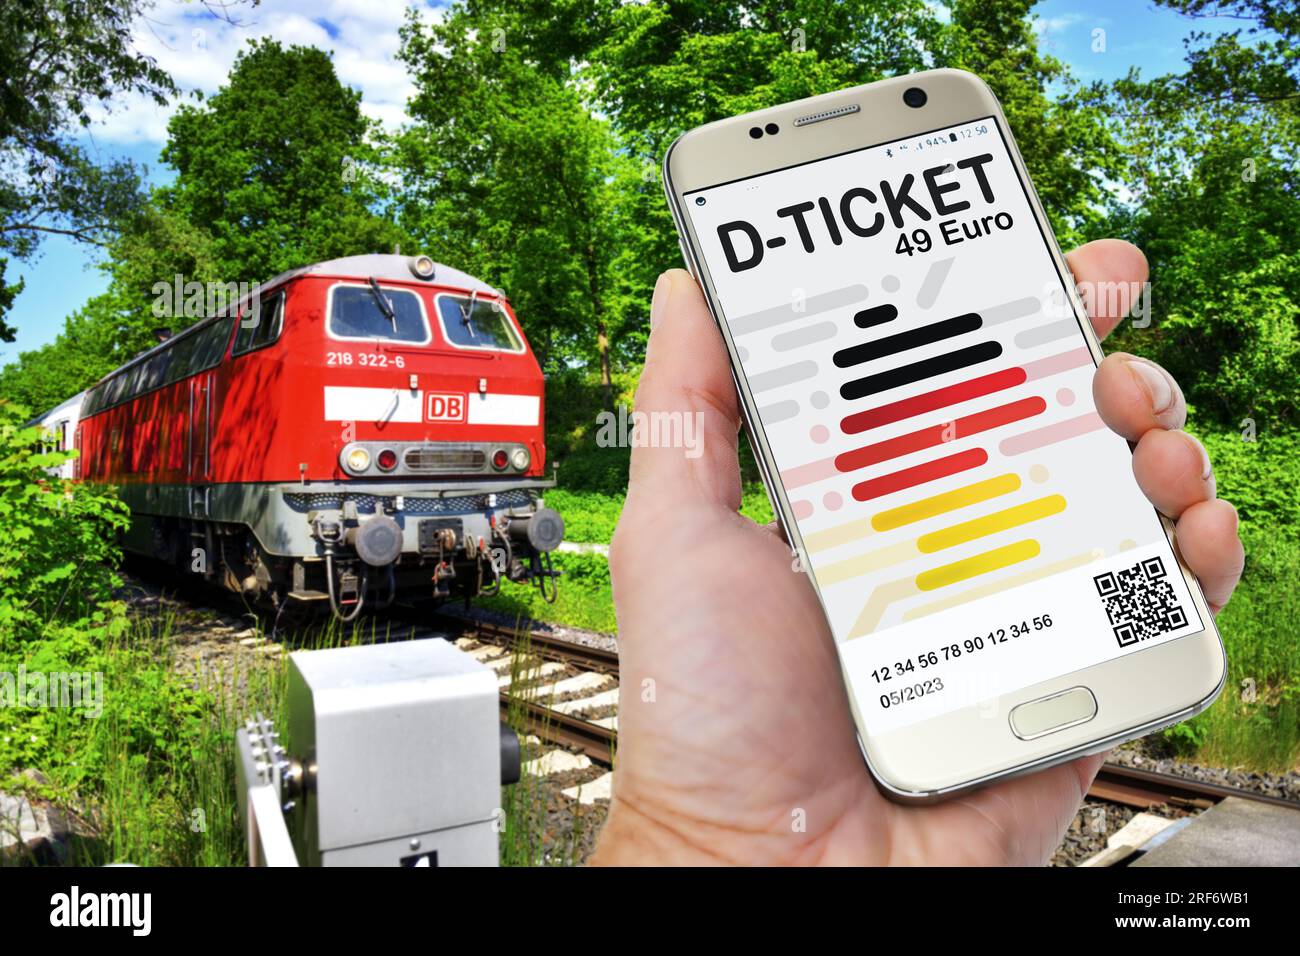 FOTOMONTAGE, Hand hält ein Smartphone mit D-Ticket vor einer Regionalbahn Stock Photo